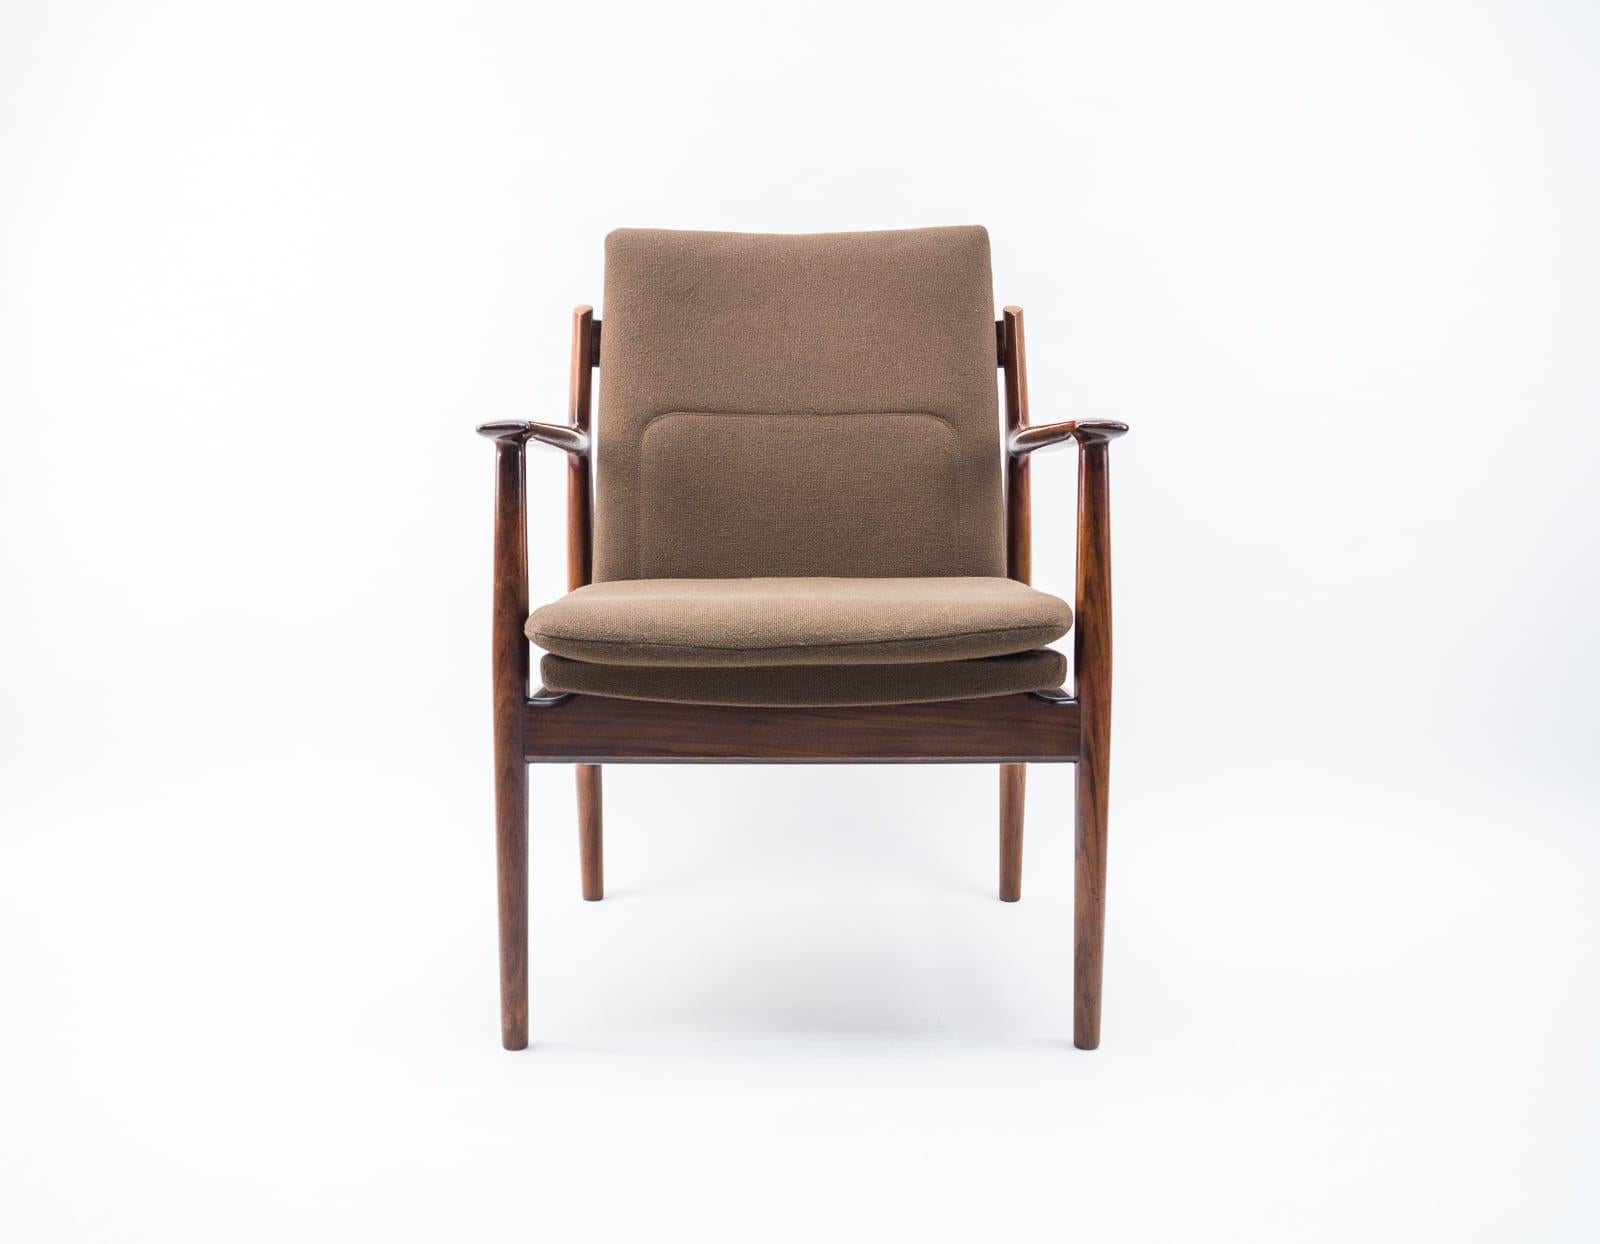 Scandinavian Modern Danish Mid Century Teak Armrest Dining Chair, Model 431 by Arne Vodder, Sibast For Sale